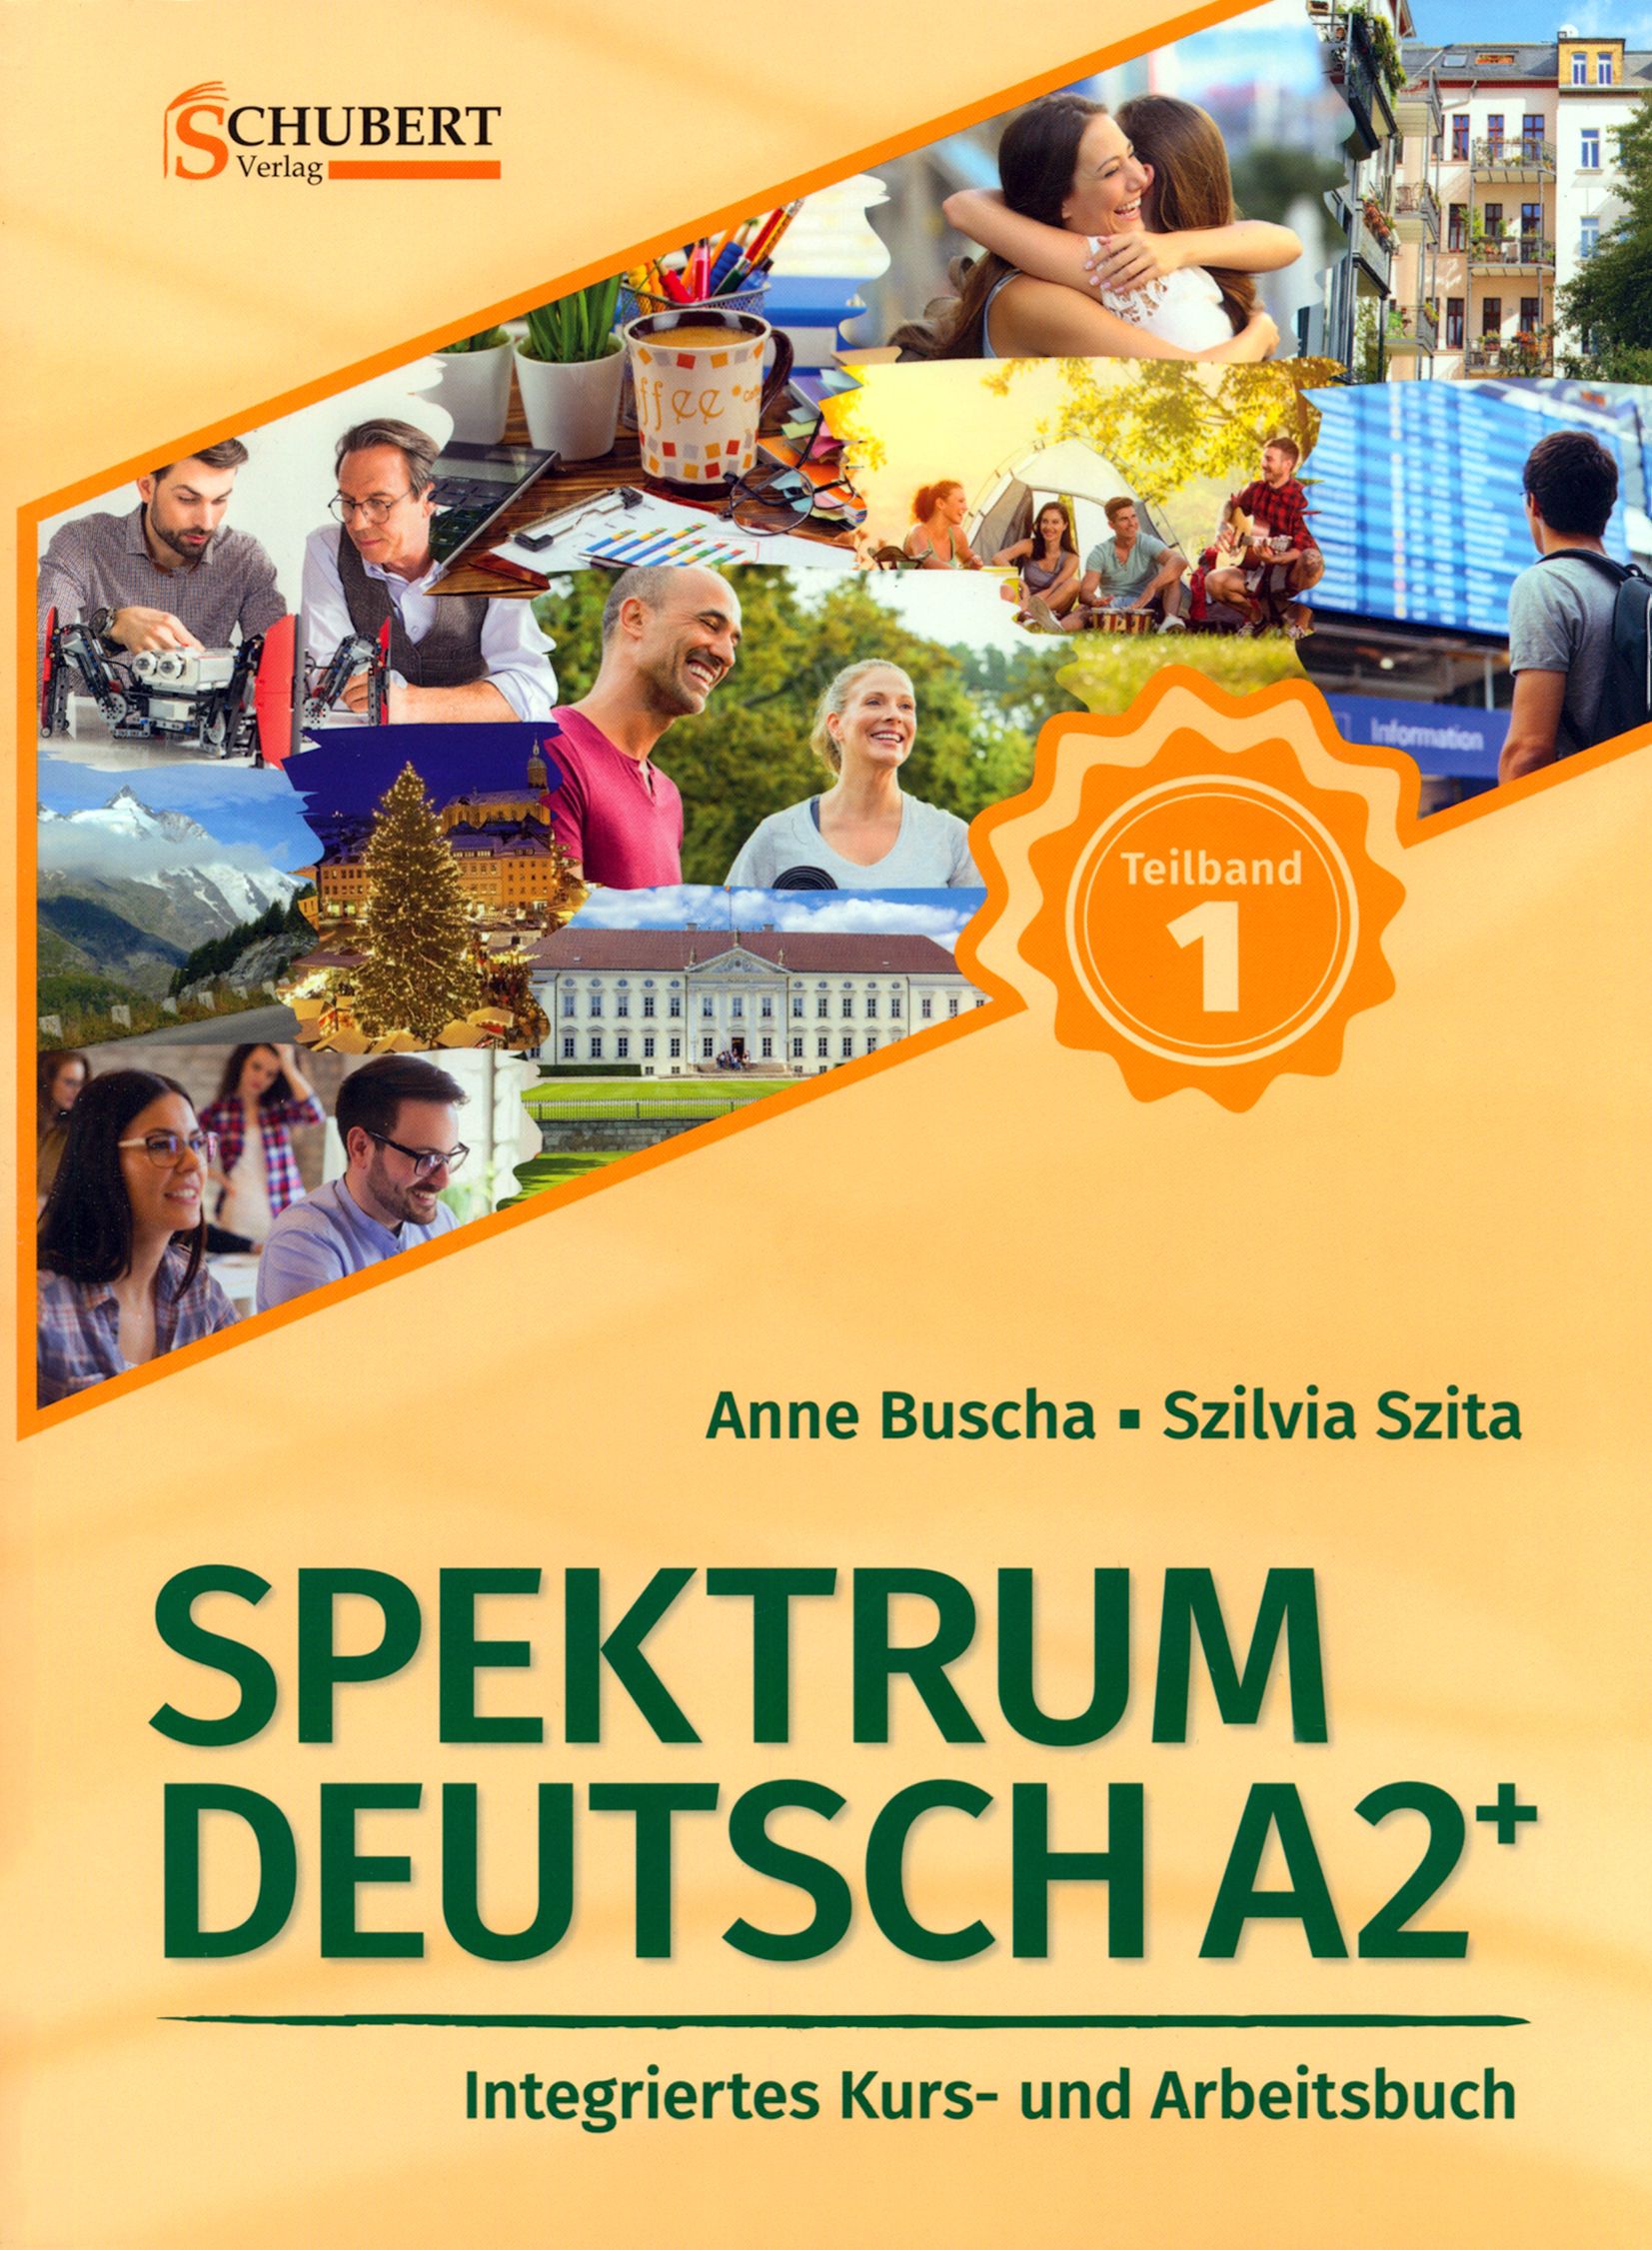 Spektrum немецкий. Spektrum 2. Spektrum учебник немецкого. Spektrum Deutsch b1 ответы. Спектрум немецкий язык учебник